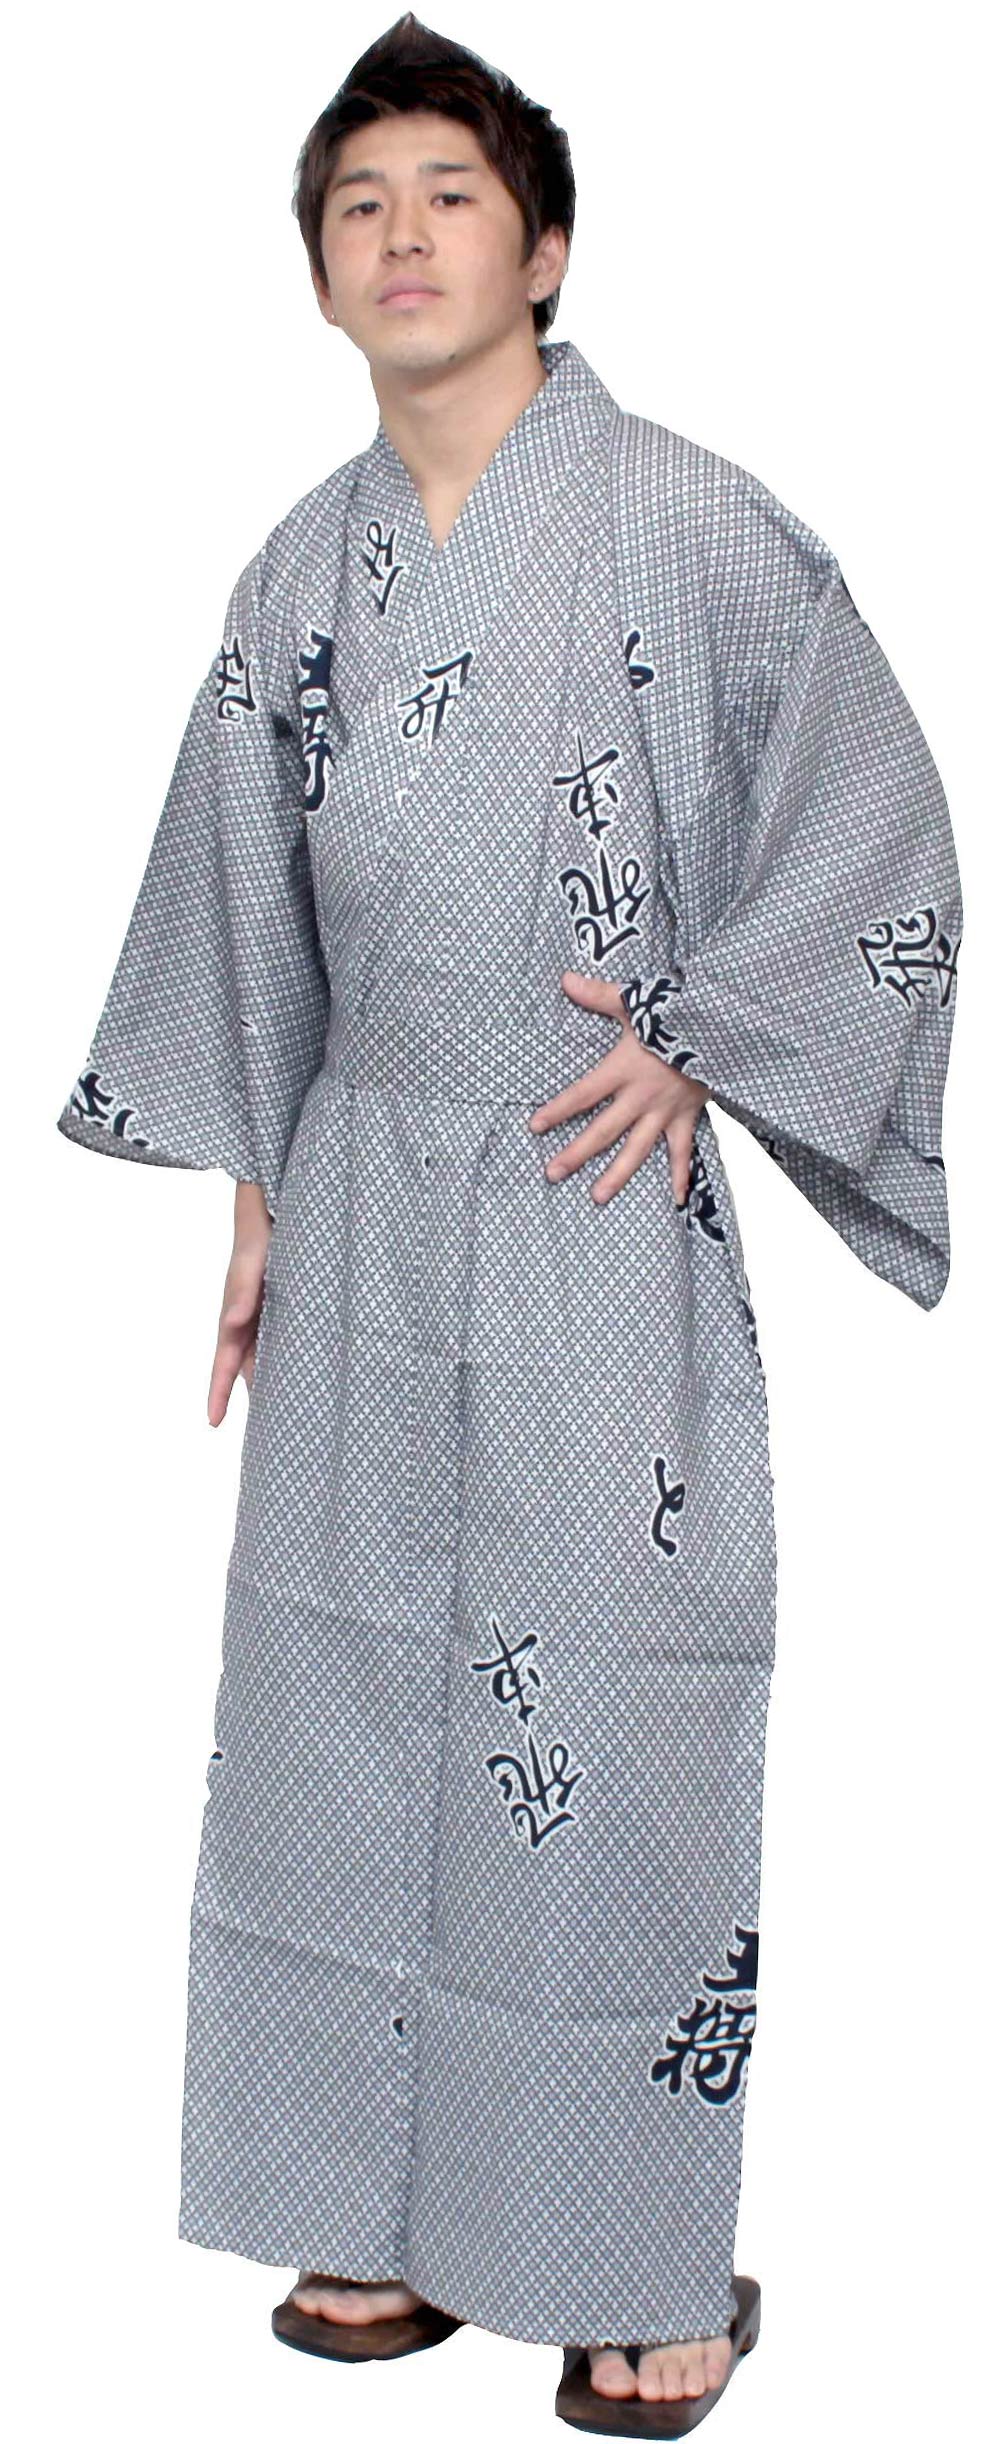 Men's Easy Yukata / Kimono Robe : Japanese Traditional Clothes - Robe Rook